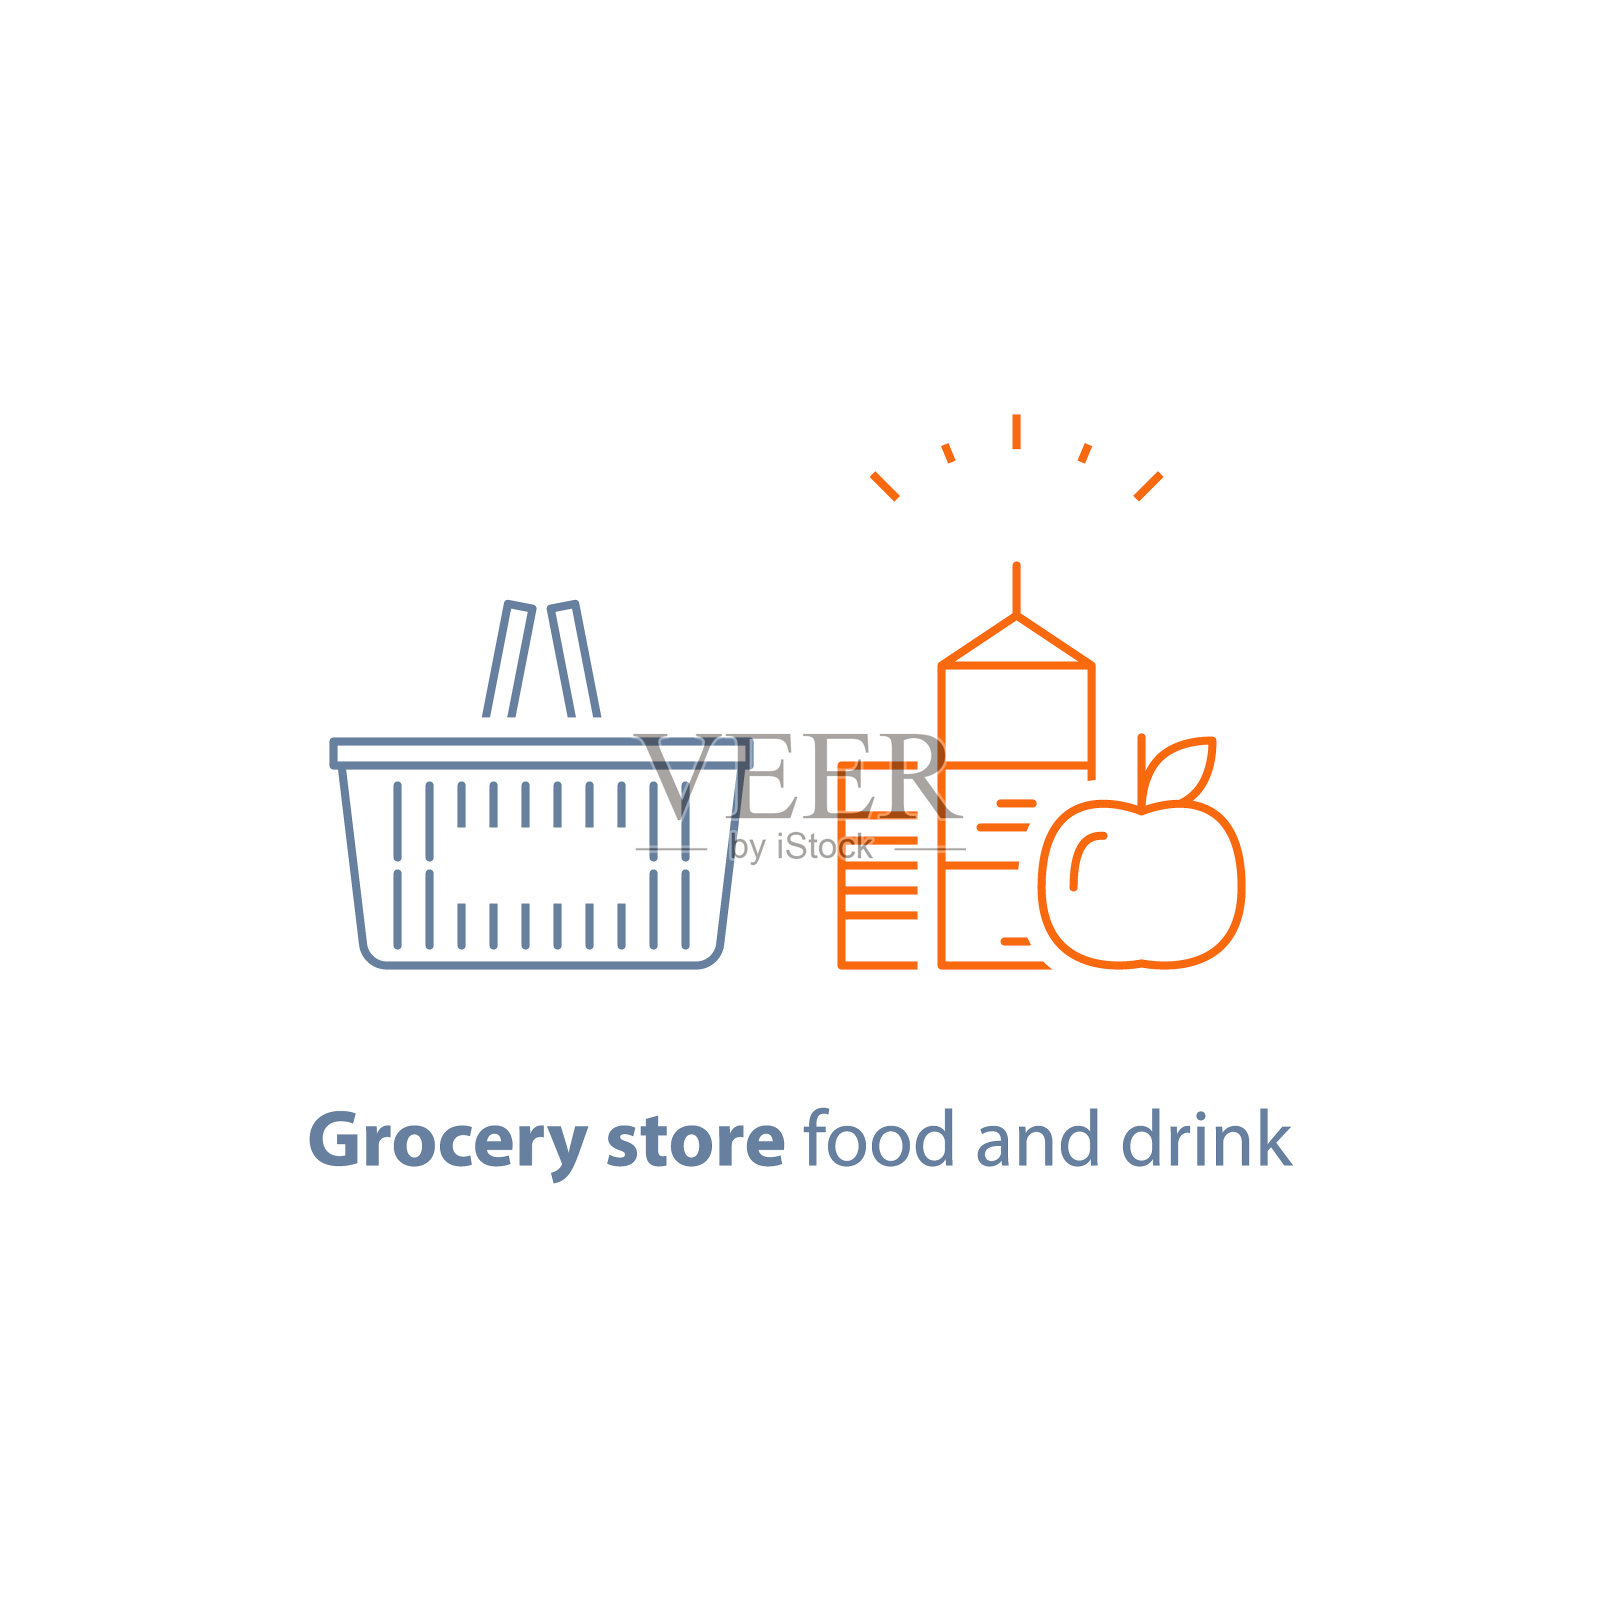 商店篮子，食品和饮料，杂货订单，特别优惠促销，矢量线图标图标素材